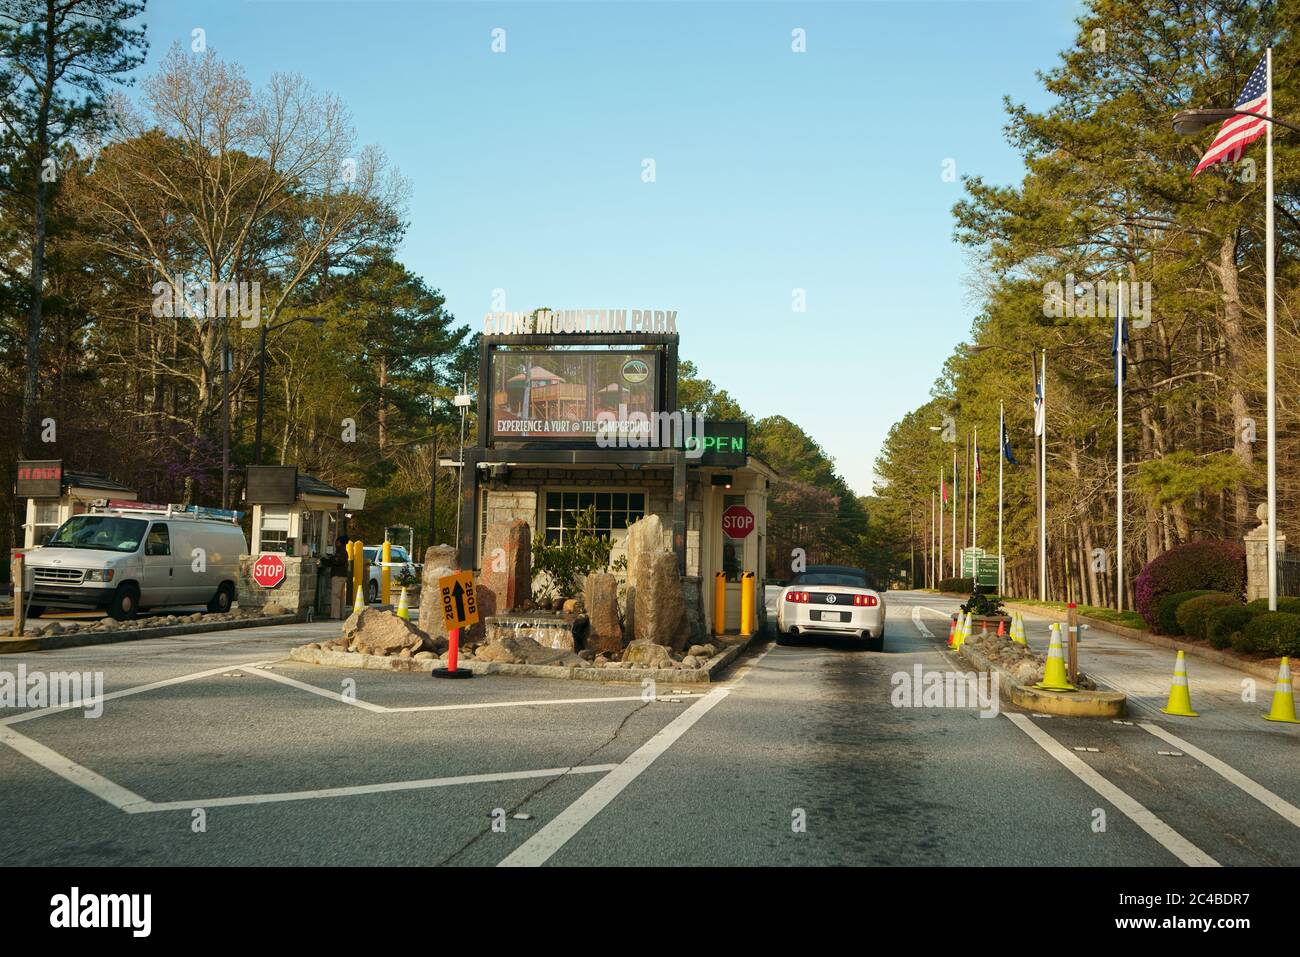 STONE MOUNTAIN, GEORGIA, USA - 19. MÄRZ 2019: Eingang zum Stone Mountain Park. Touristenattraktion in der Nähe von Atlanta, Georgia, USA. Stockfoto